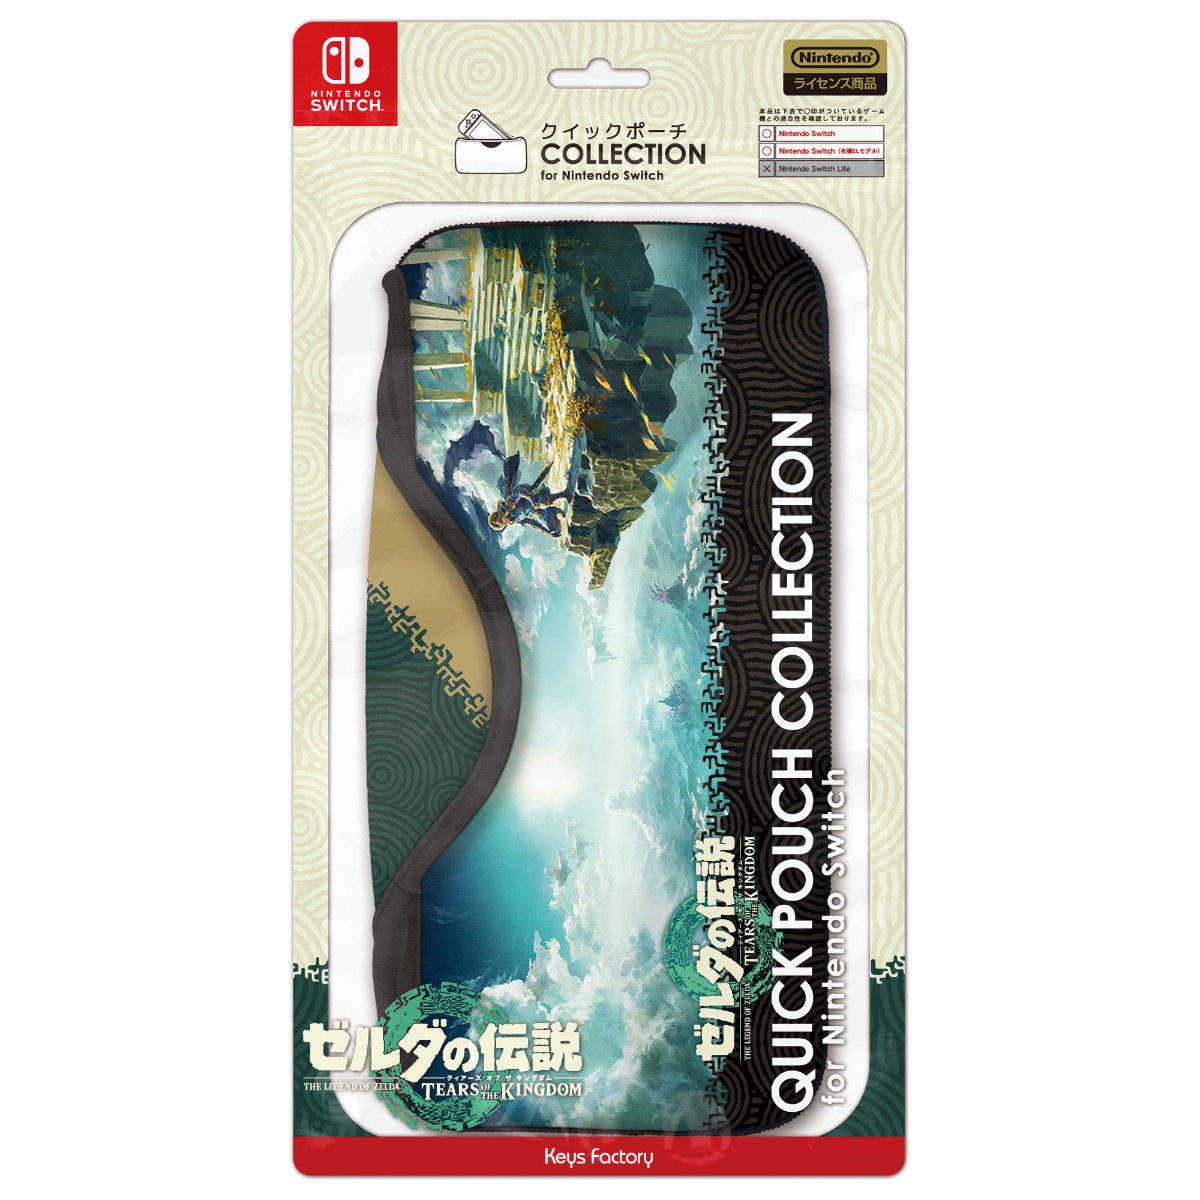 クイックポーチ COLLECTION for Nintendo Switch (ゼルダの伝説 ティアーズ オブ ザ キングダム)画像